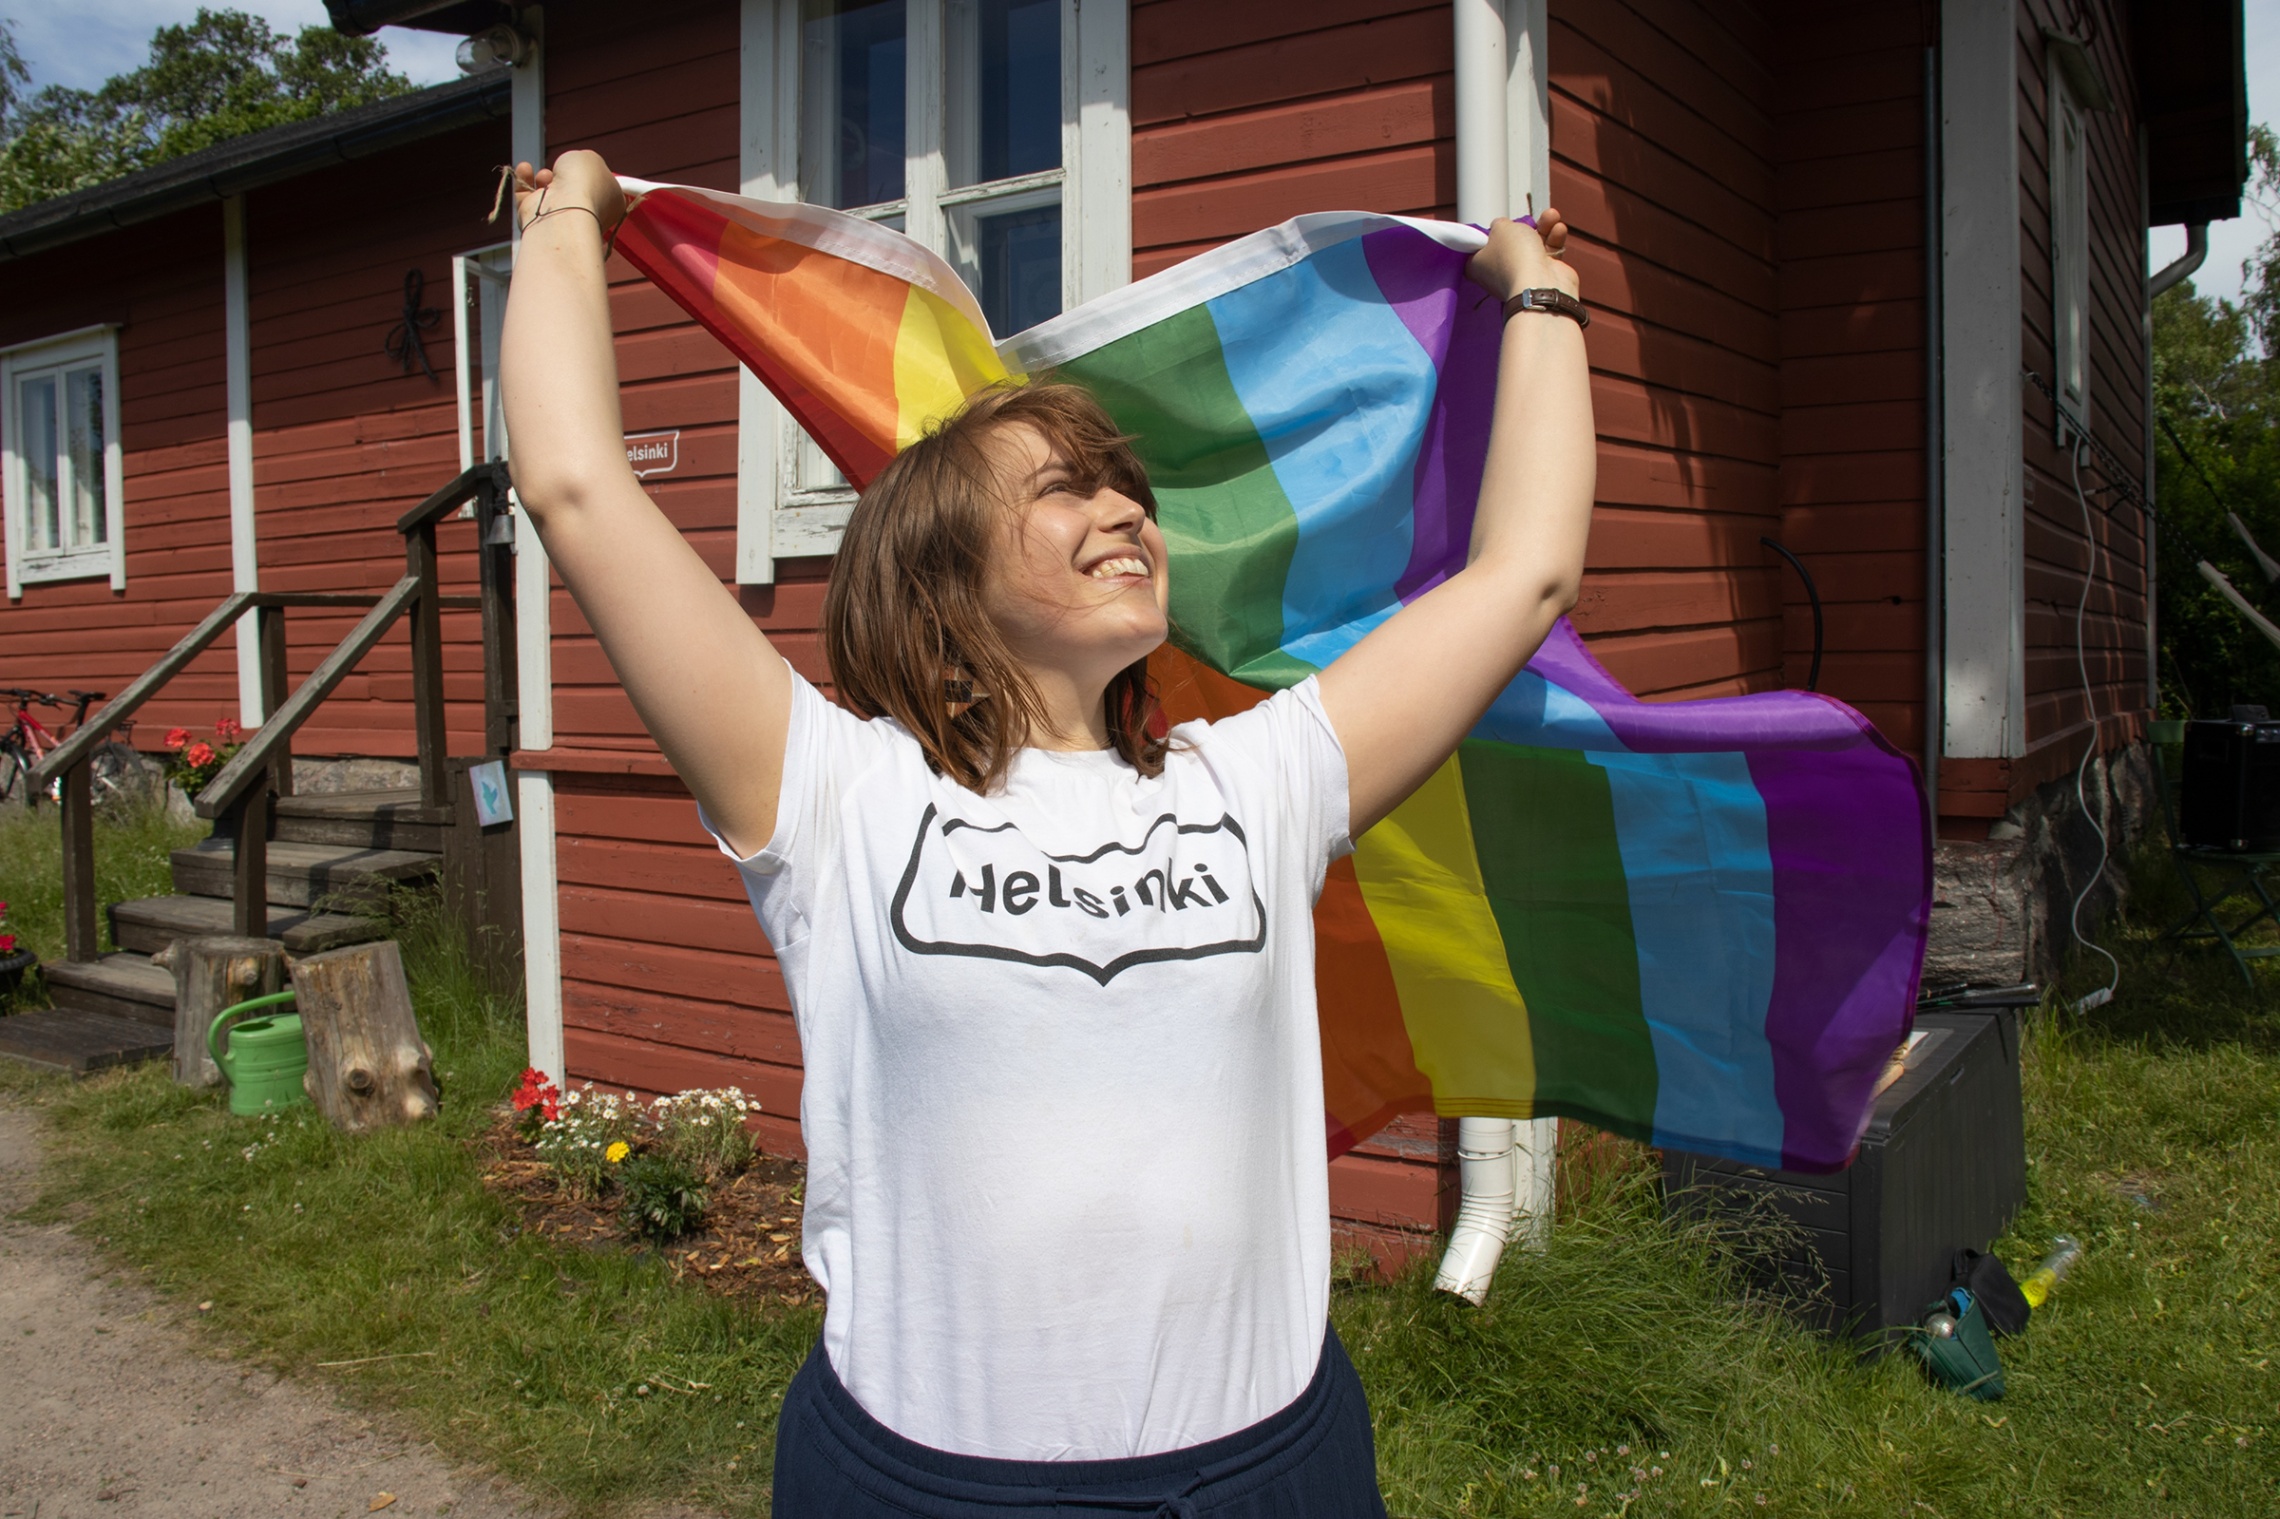 kuvassa ihminen pitelee seisoo kädet ilmassa ja käsissään hänellä on sateenkaaren värinen pride-lippu. ihminen katsoo ylöspäin kohti lippua ja hymyilee